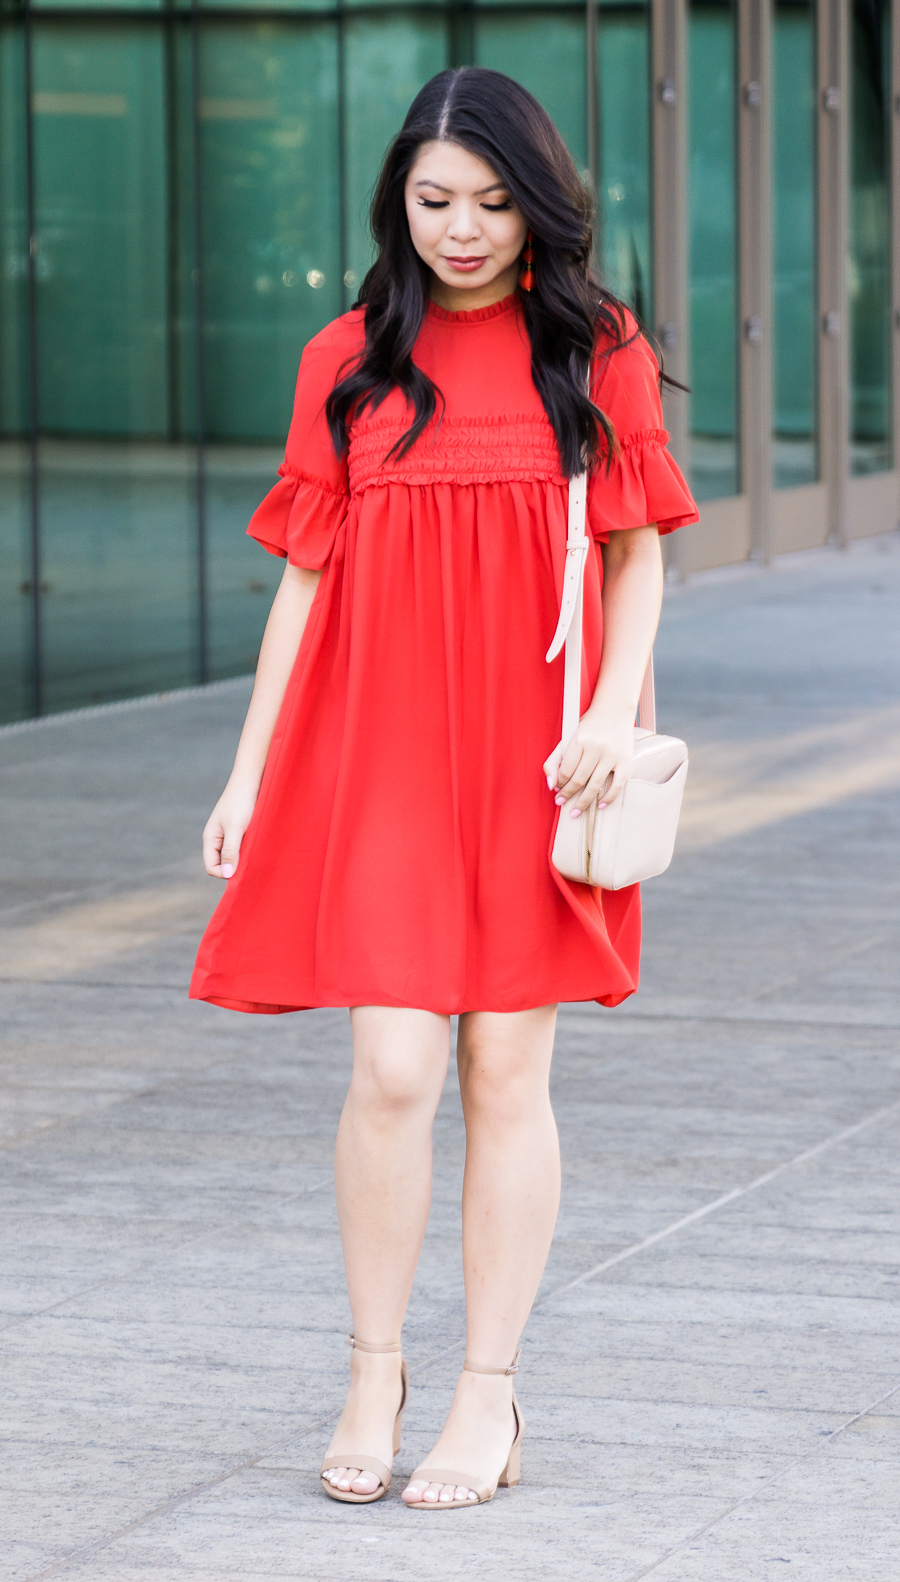 Red Smock Dress | Just A Tina Bit